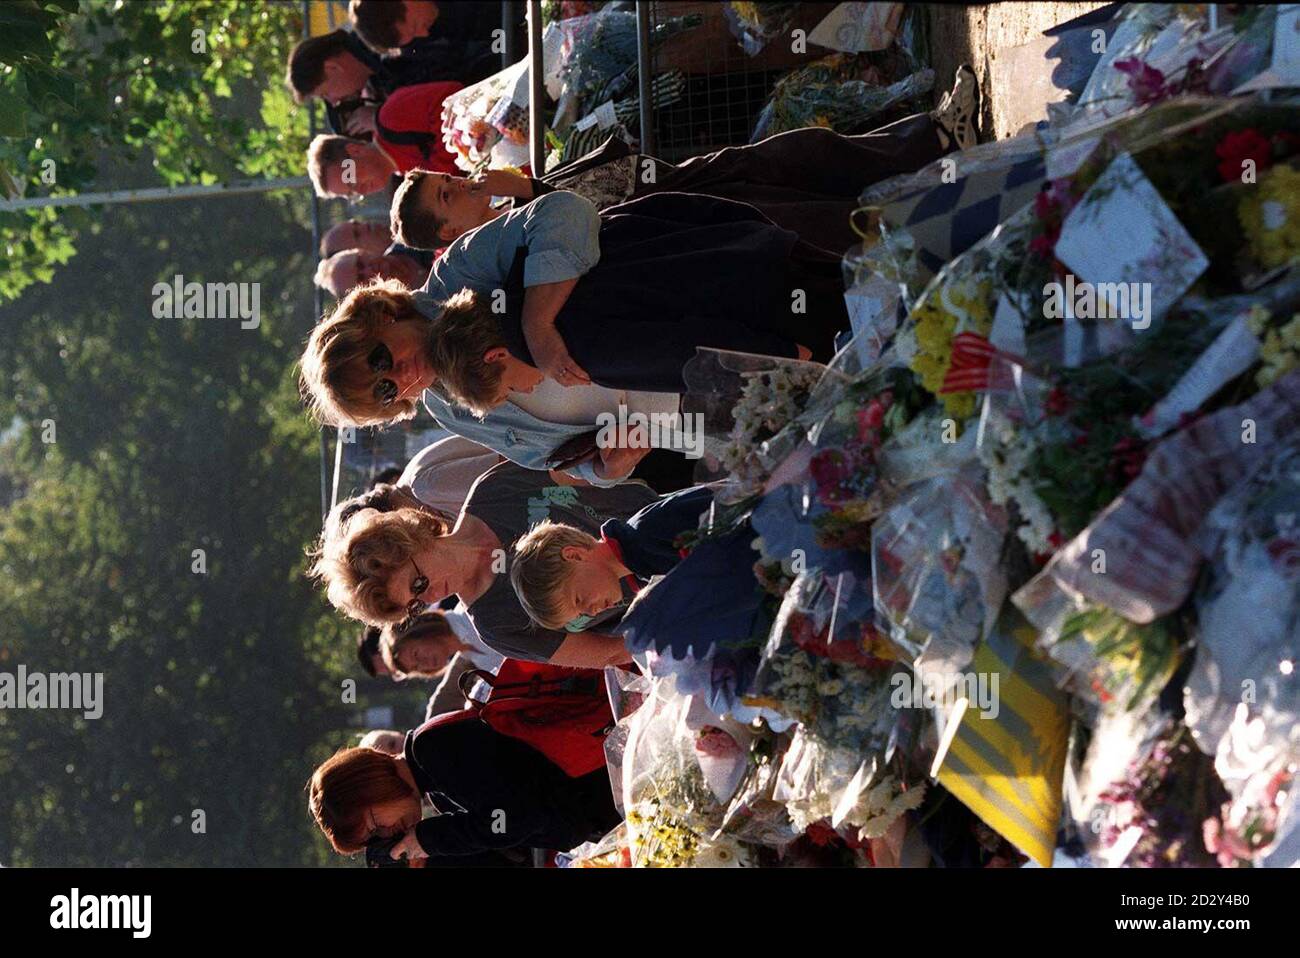 La scena a Kensington Palace questa mattina (Lunedi) con la folla ancora lasciando tributi floreali a Diana, Principessa del Galles. Foto di David Giles. Foto Stock